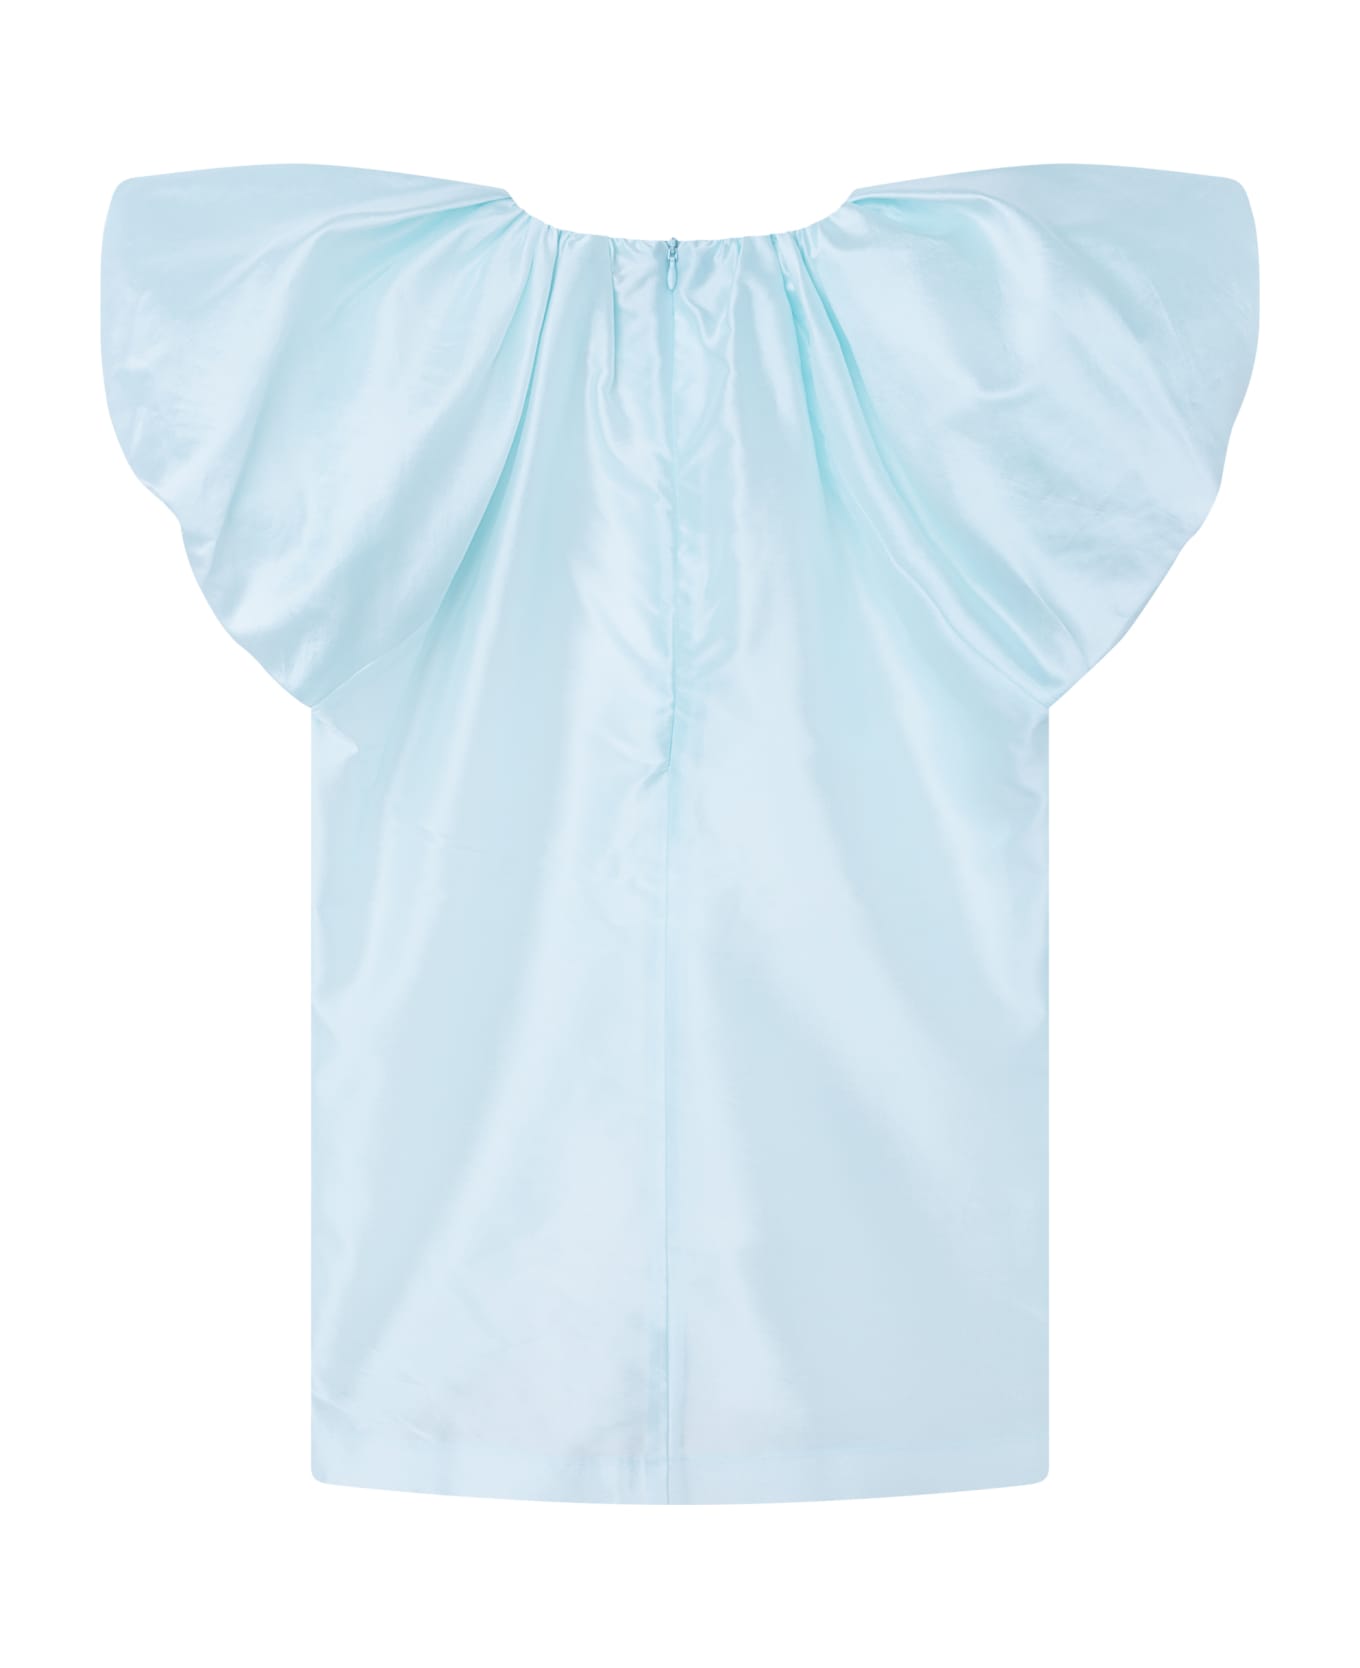 Lanvin Dress With Balloon Shirt - Light blue